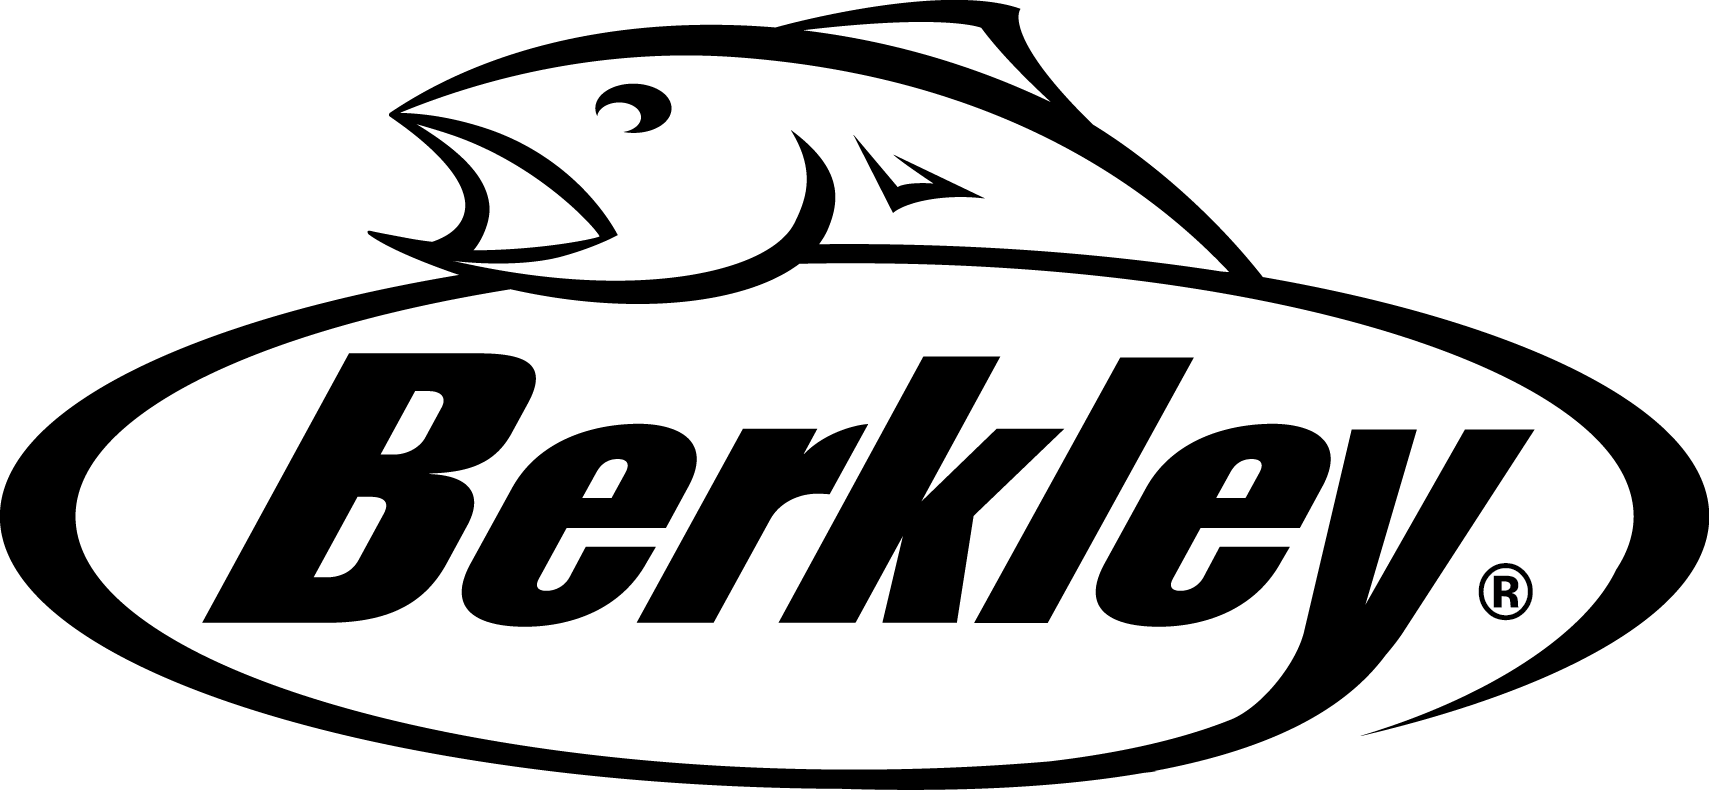 Berkley Fishing Logo (1709x790)